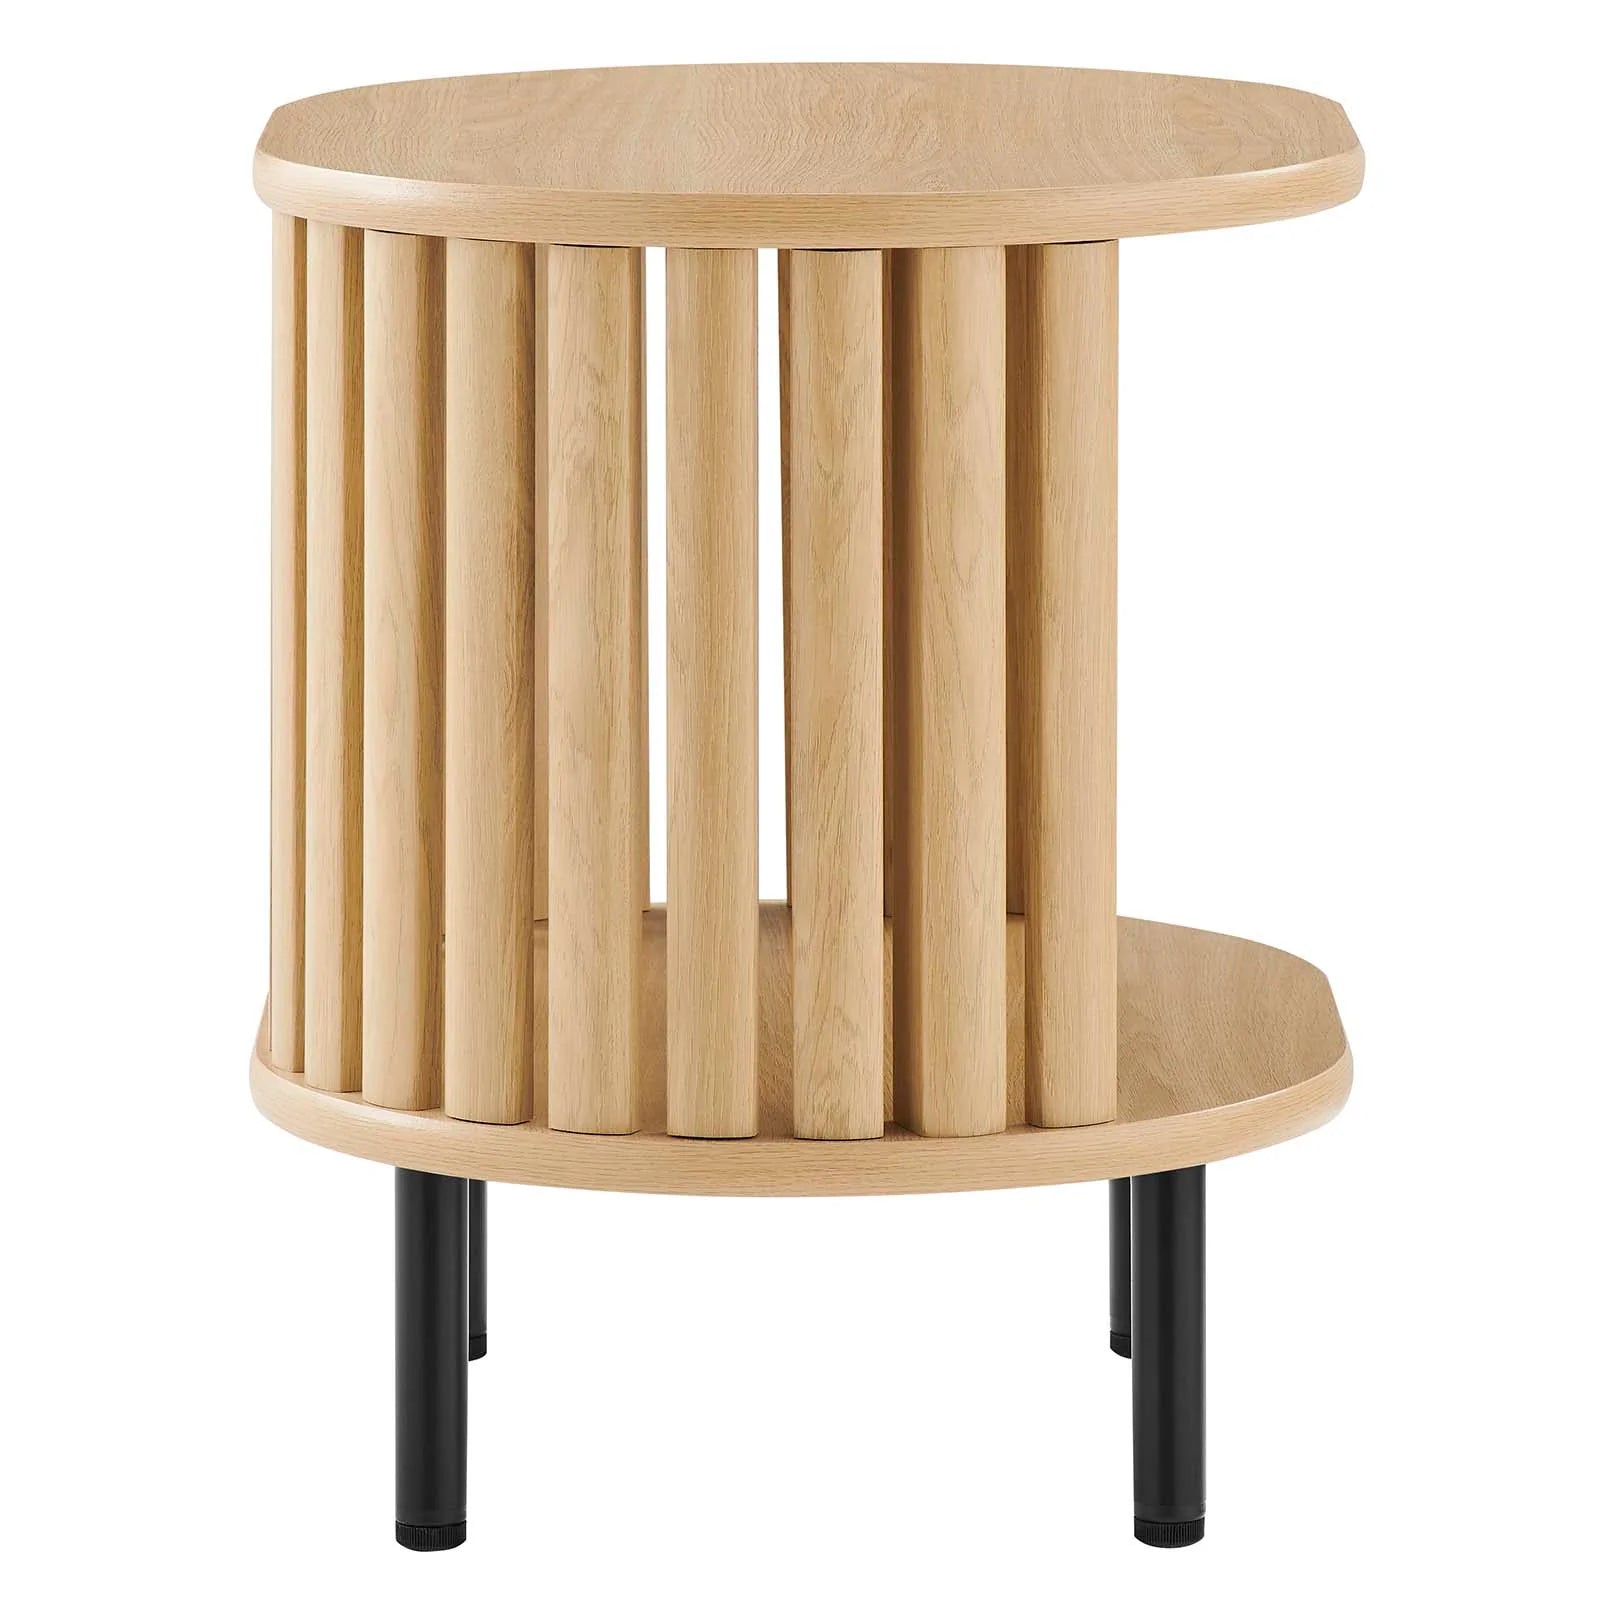 Mesa auxiliar ovalada de madera color roble Veron de lado.